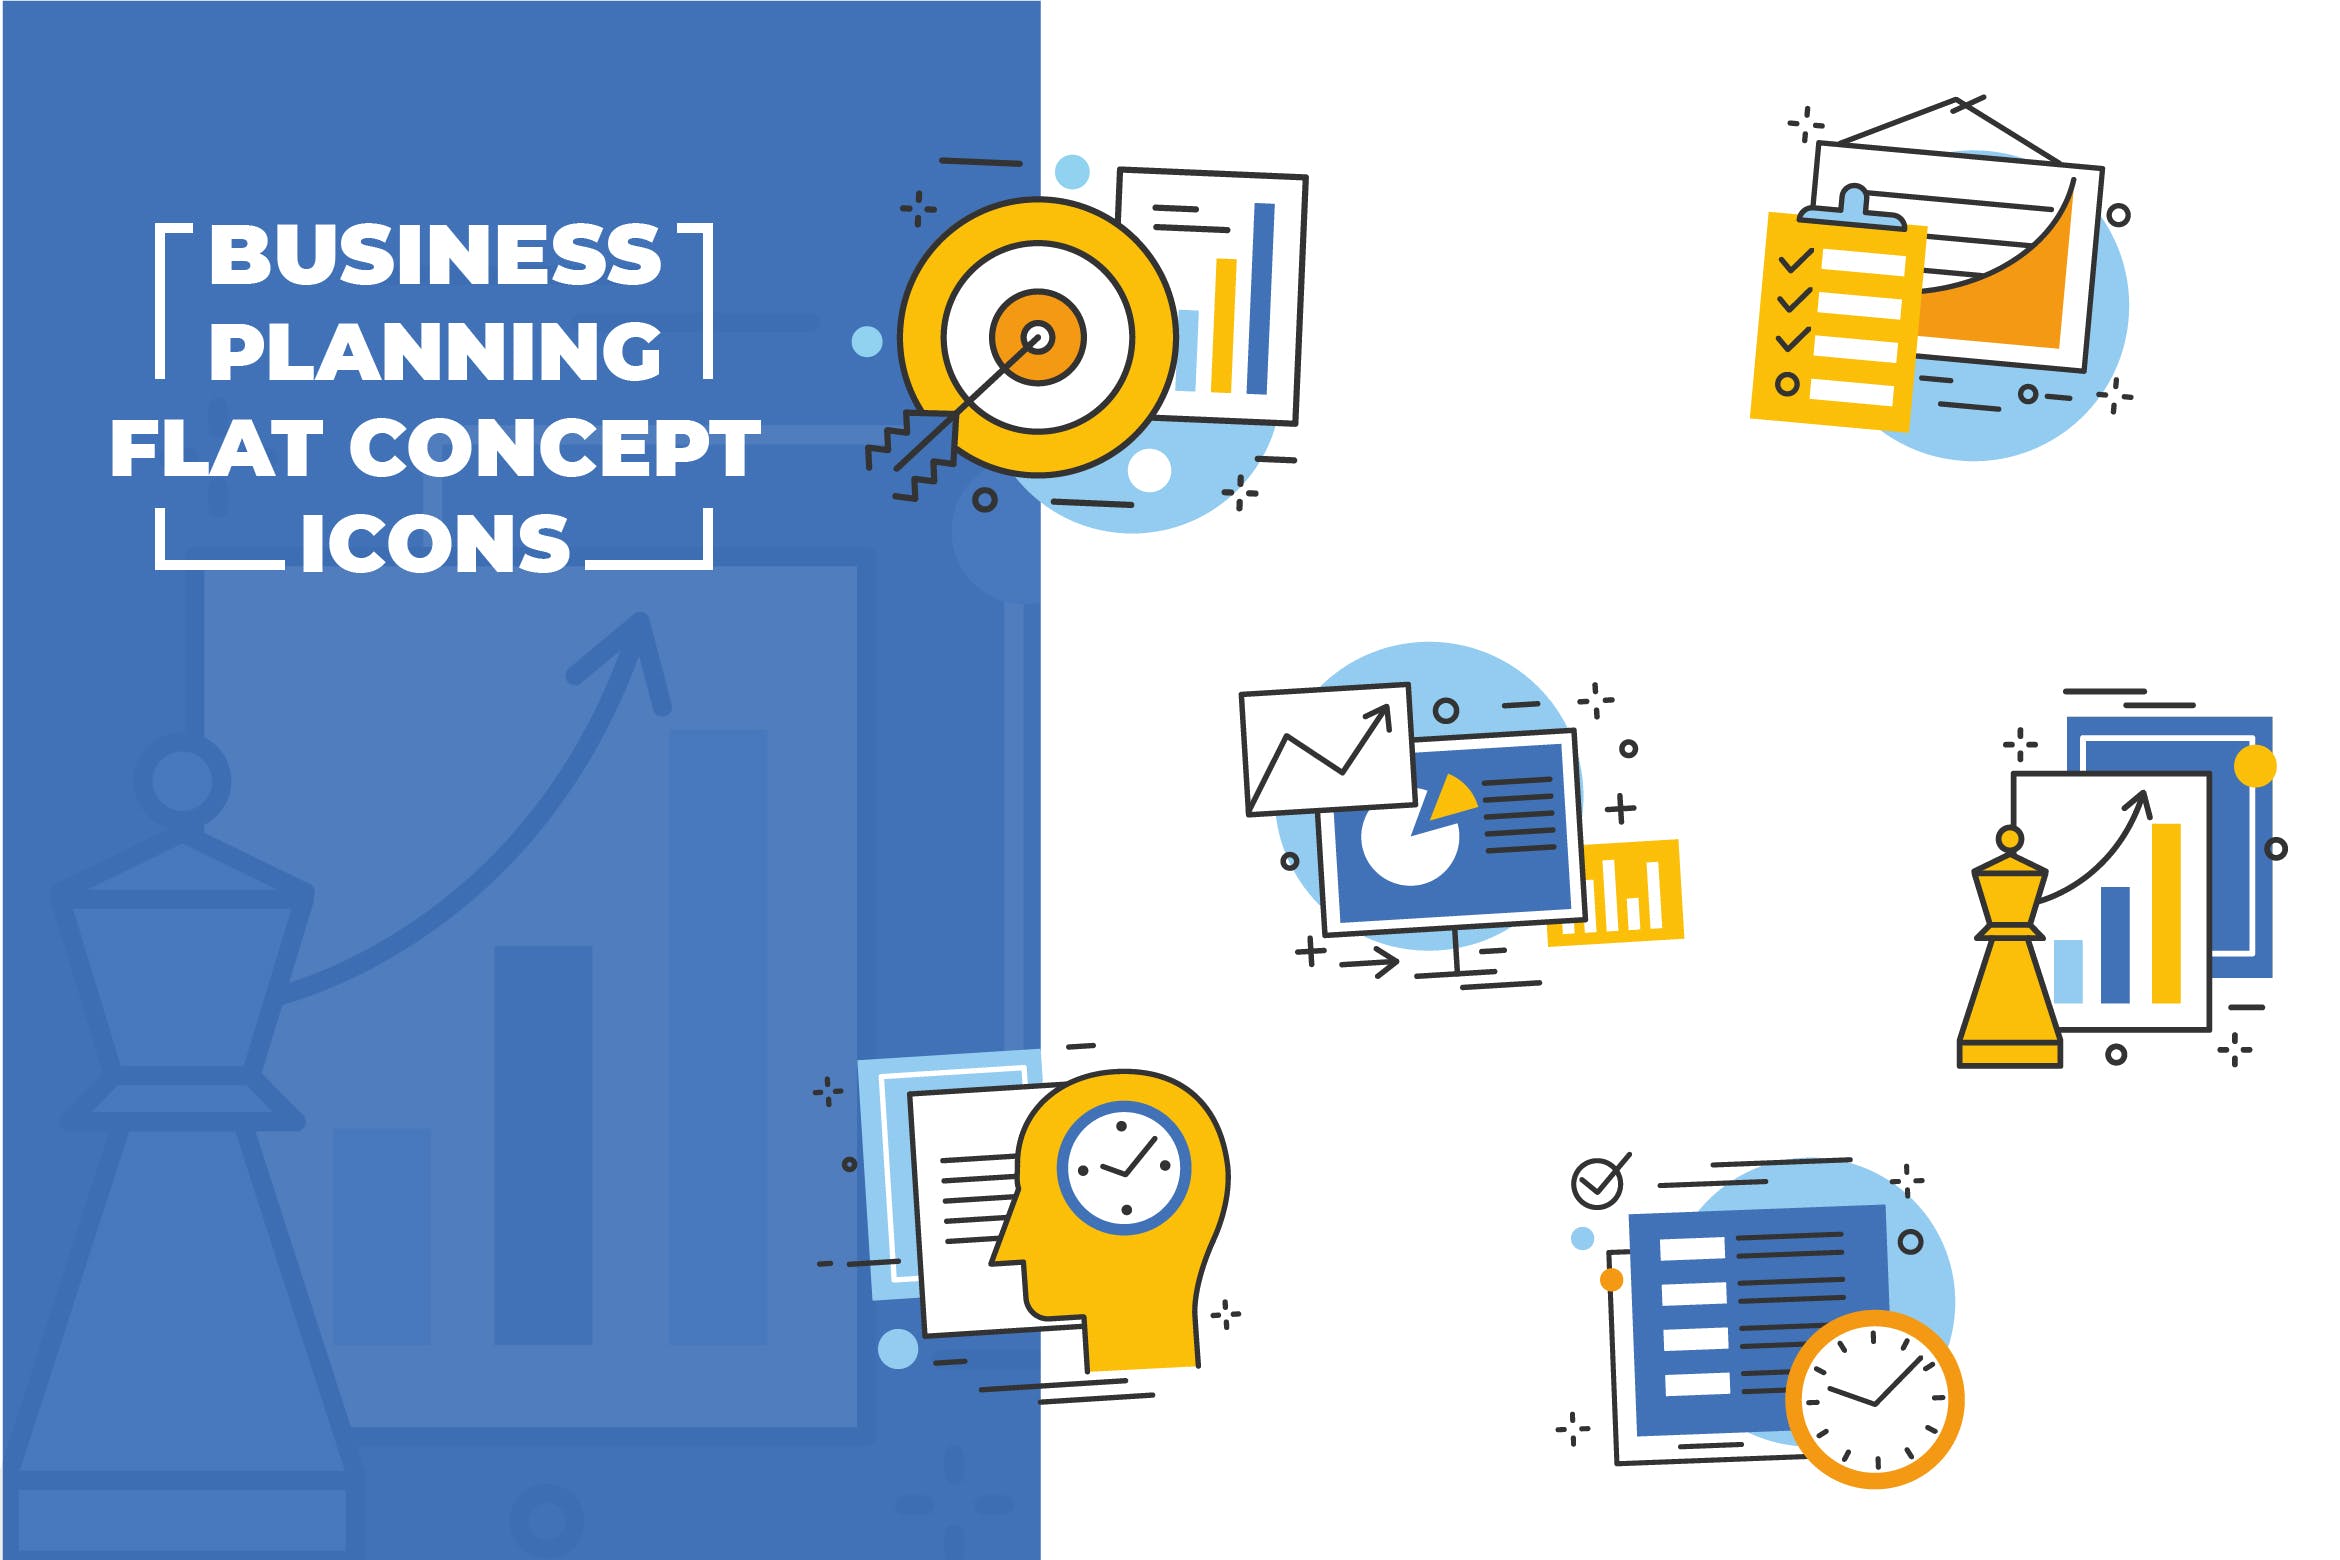 商业计划扁平设计风格矢量图标 Business Planning Flat Icons插图